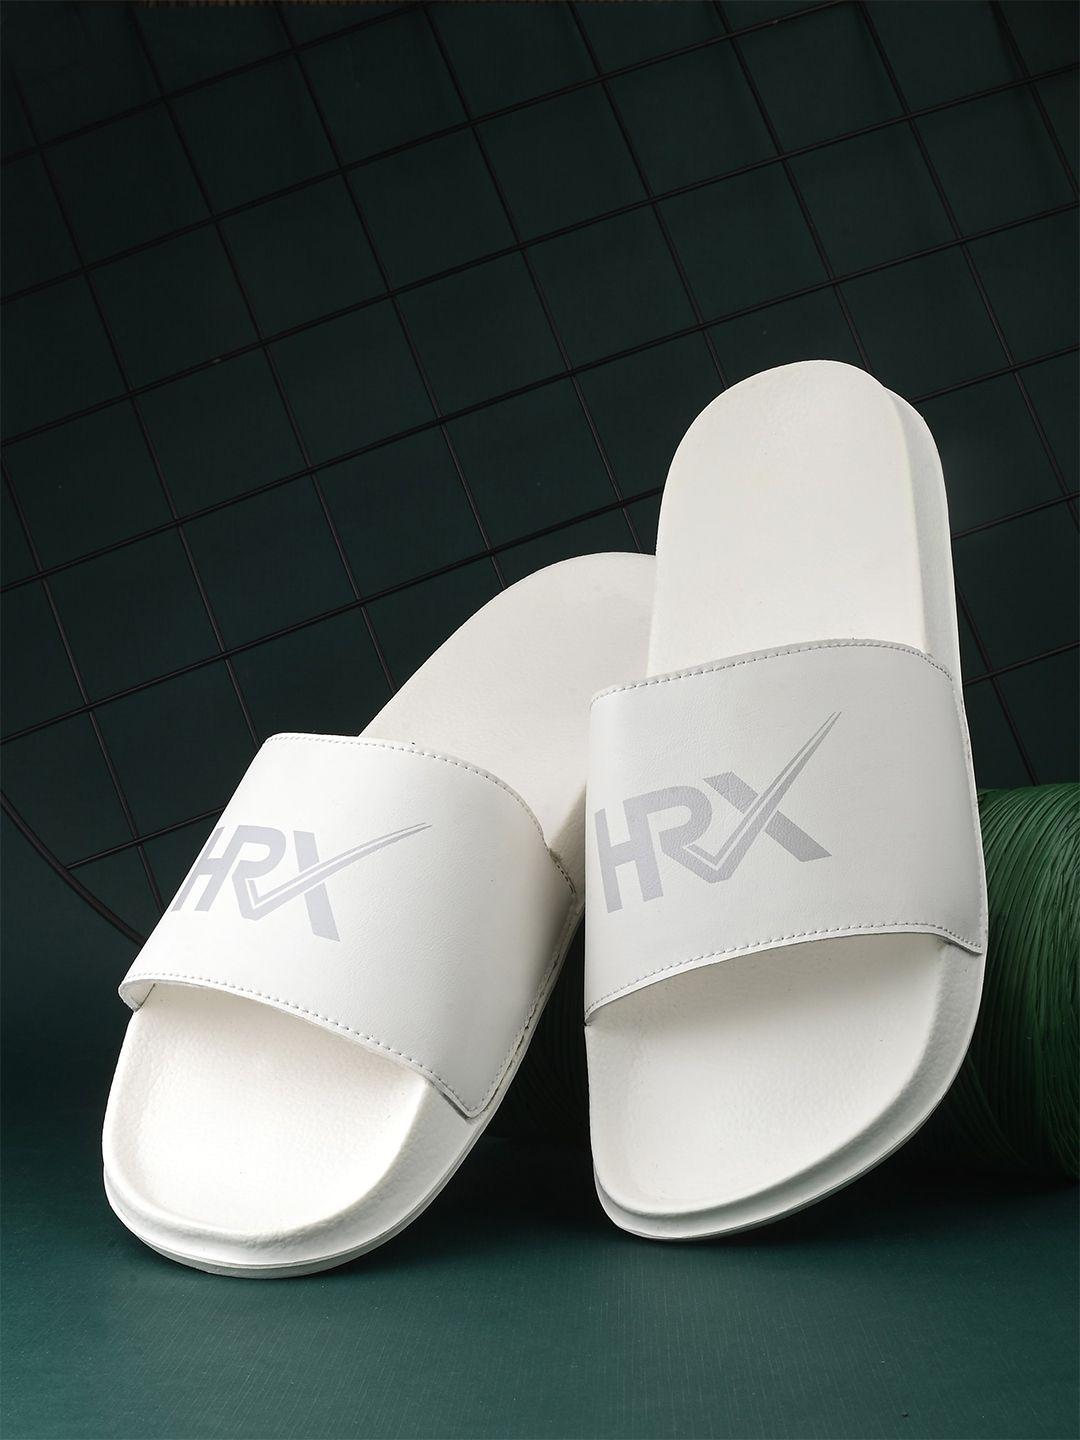 hrx by hrithik roshan men white & grey brand logo printed sliders